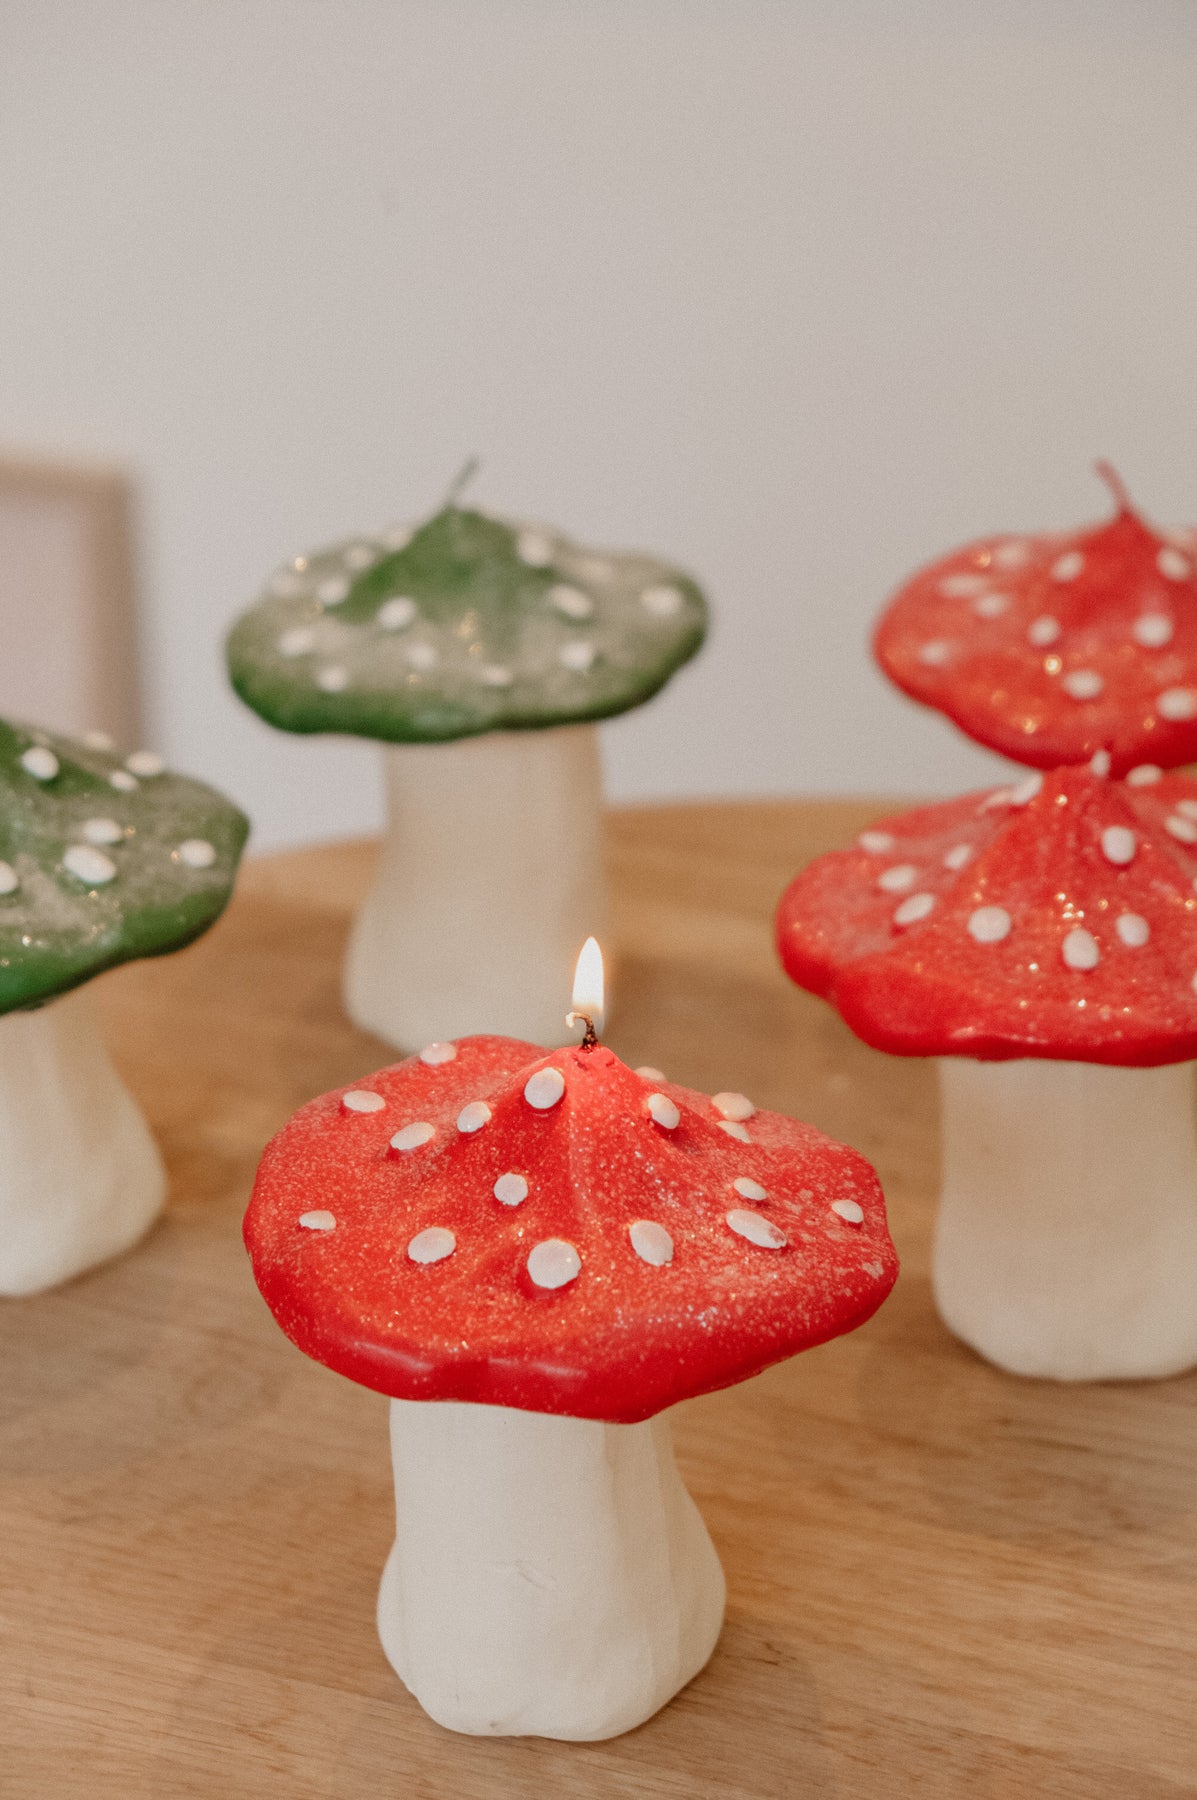 Easy DIY Mushroom Cap Candles │ Velas de Hongos